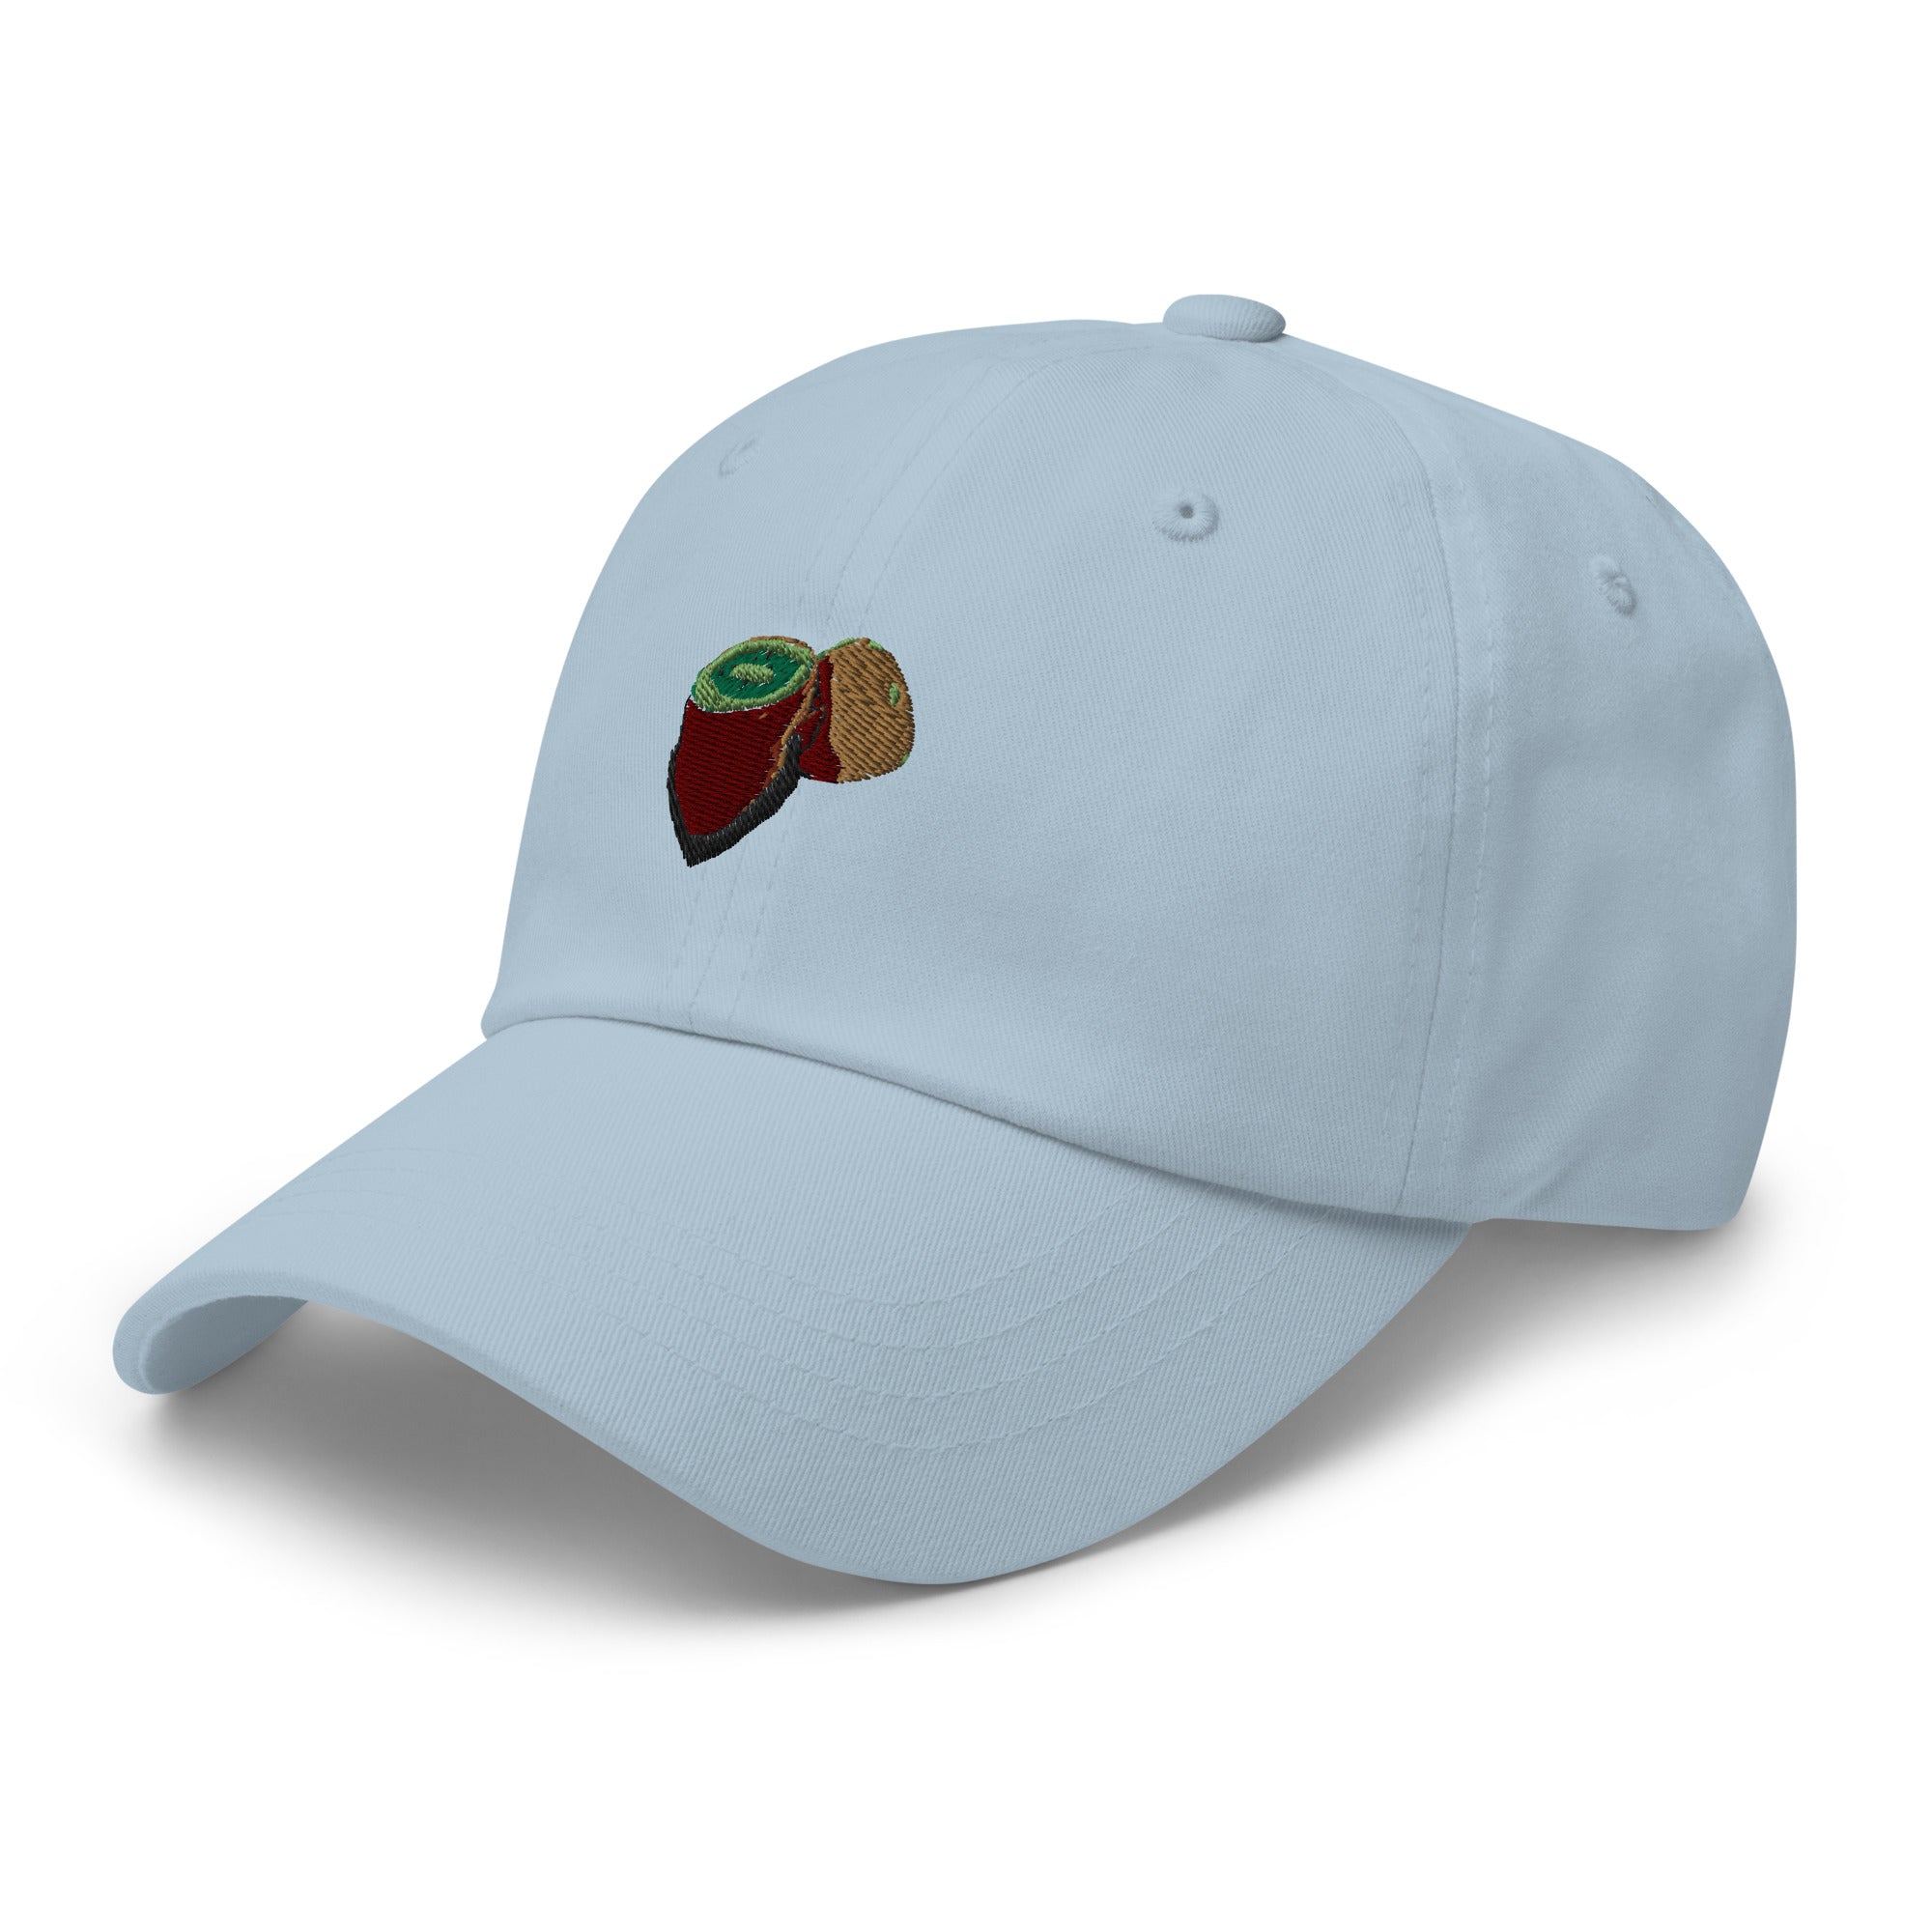 Kiwi - Beared Fruit Dad hat